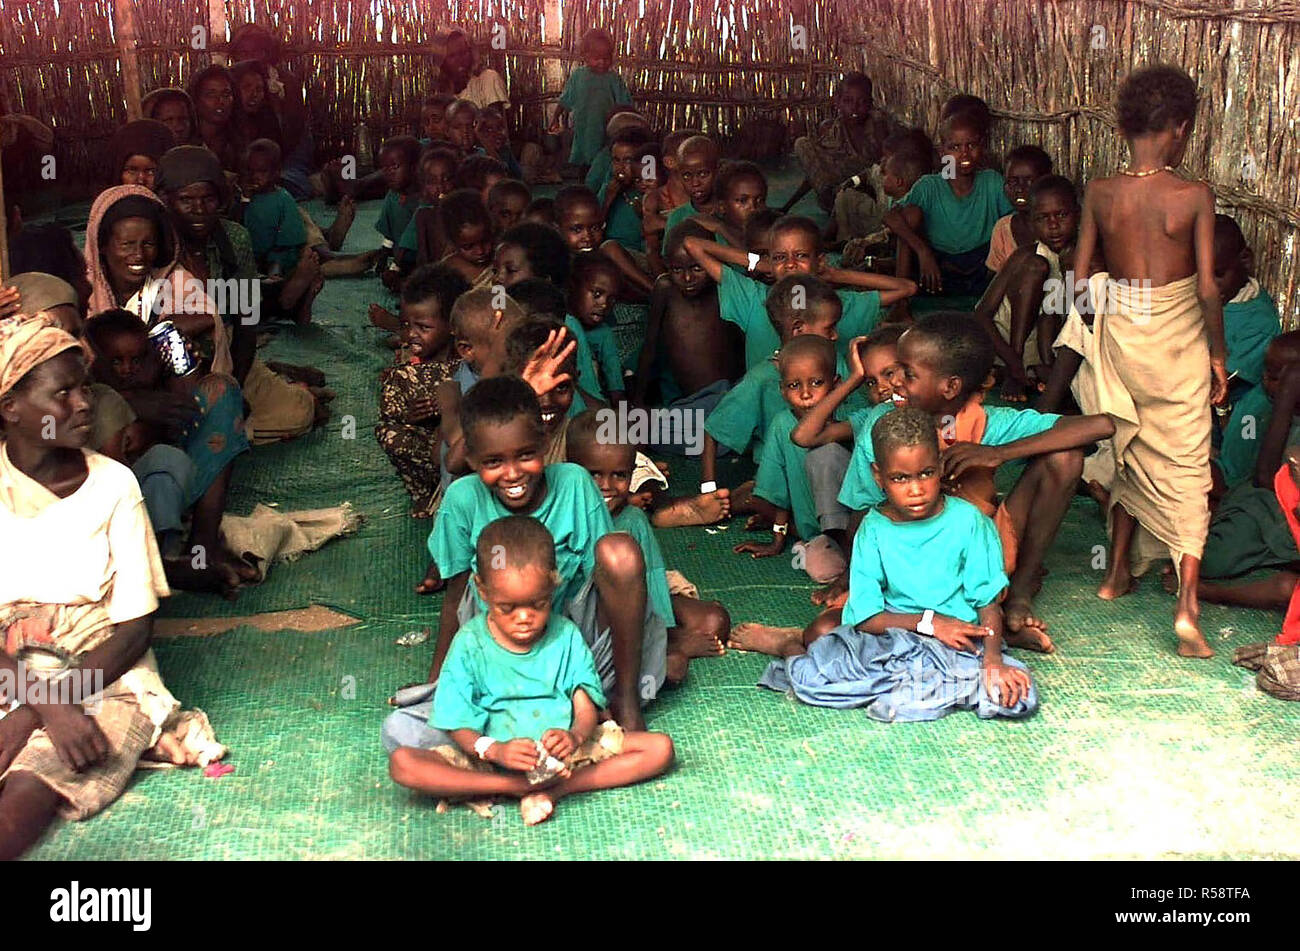 1992 - Recto por disparos dentro de una choza de bambú en varios niños somalíes sentados en filas sobre una alfombra verde. Casi todos los niños están vistiendo camisetas verdes. Algunas versiones antiguas de mujeres somalíes están sentados en una fila a la izquierda del fotograma. Foto de stock